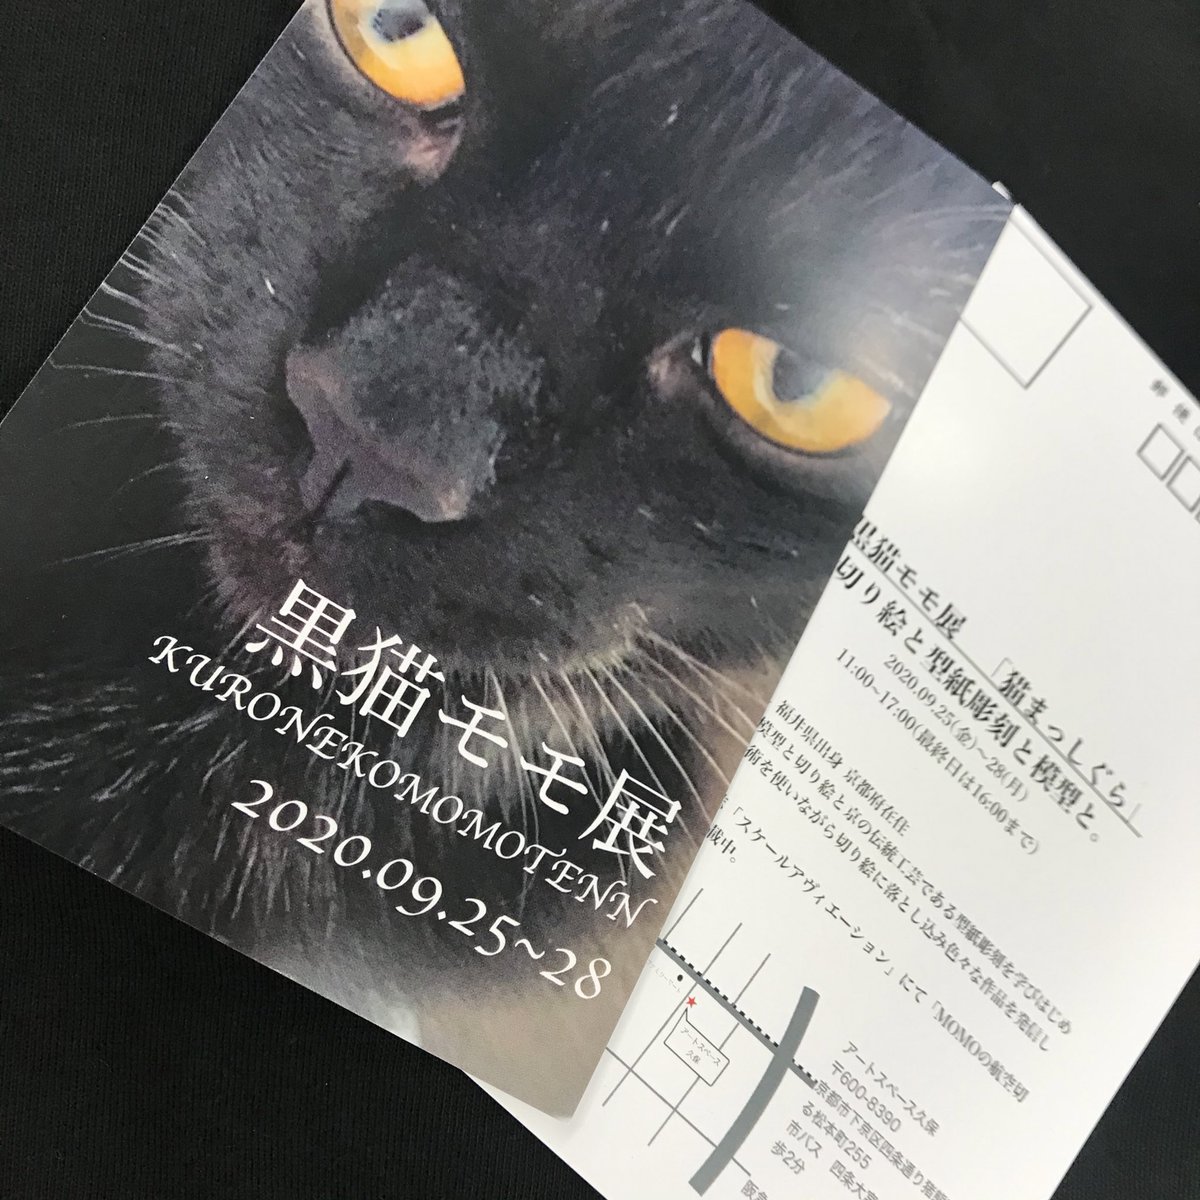 佐藤ミナミ スケールアヴィエーション で切り絵の連載をしている 黒猫モモちゃん Momowanwan の個展のdmをいただきました 可愛い黒猫 個展名は 猫まっしぐら 9月25日 28日まで 京都のアートスペース久保さんで開催されるそうです 行き